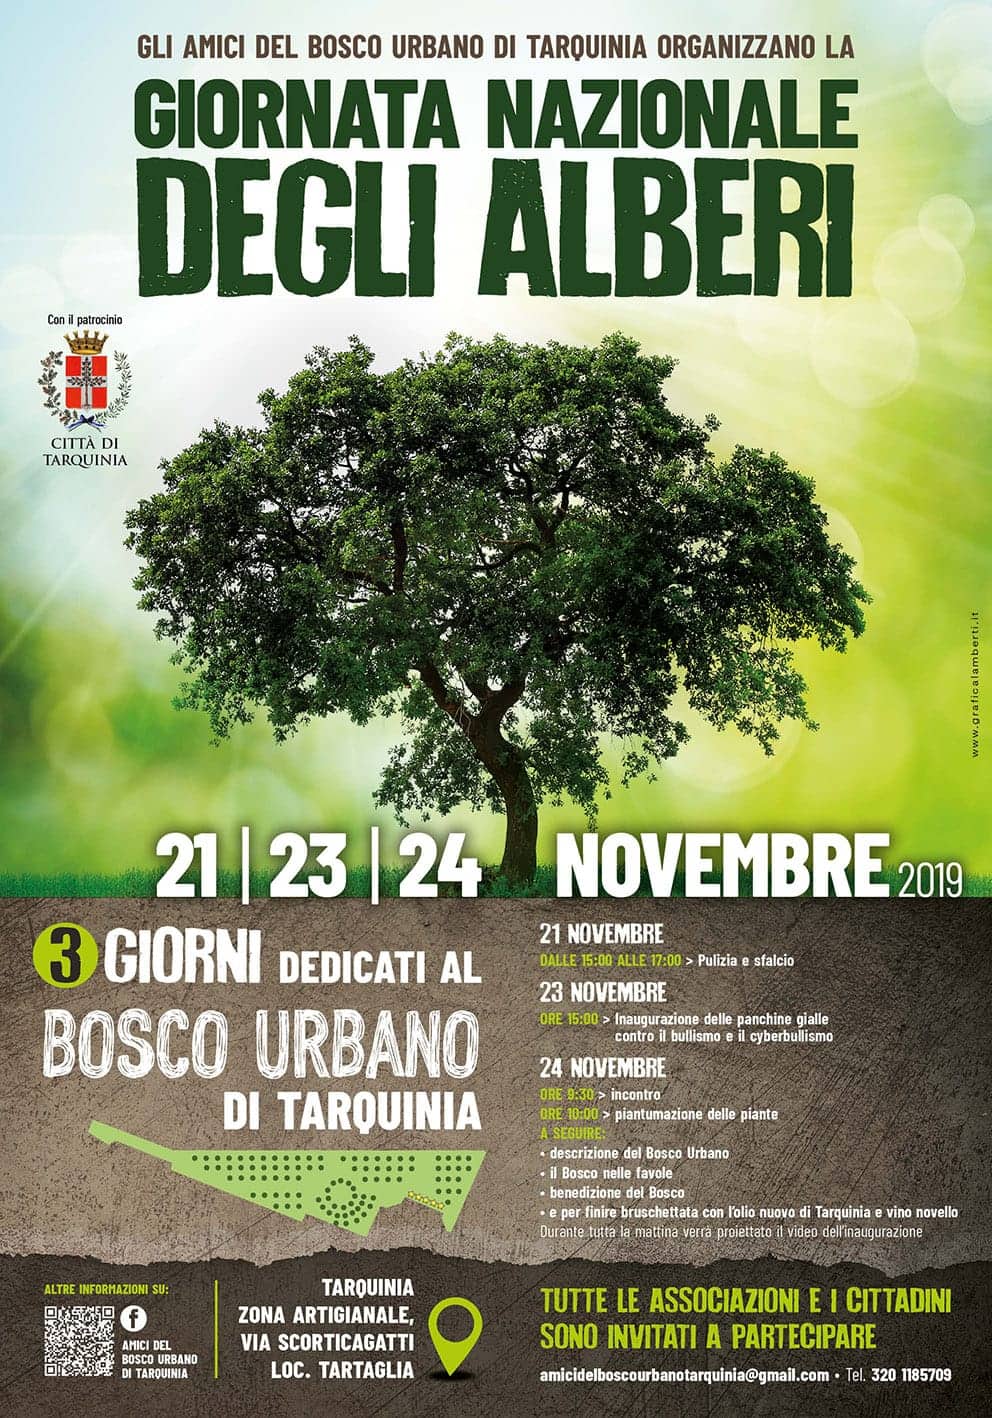 Bosco Urbano di Tarquinia: il 21, 23 e 24 novembre tre giorni di eventi per la Giornata Nazionale dell'albero - lextra.news